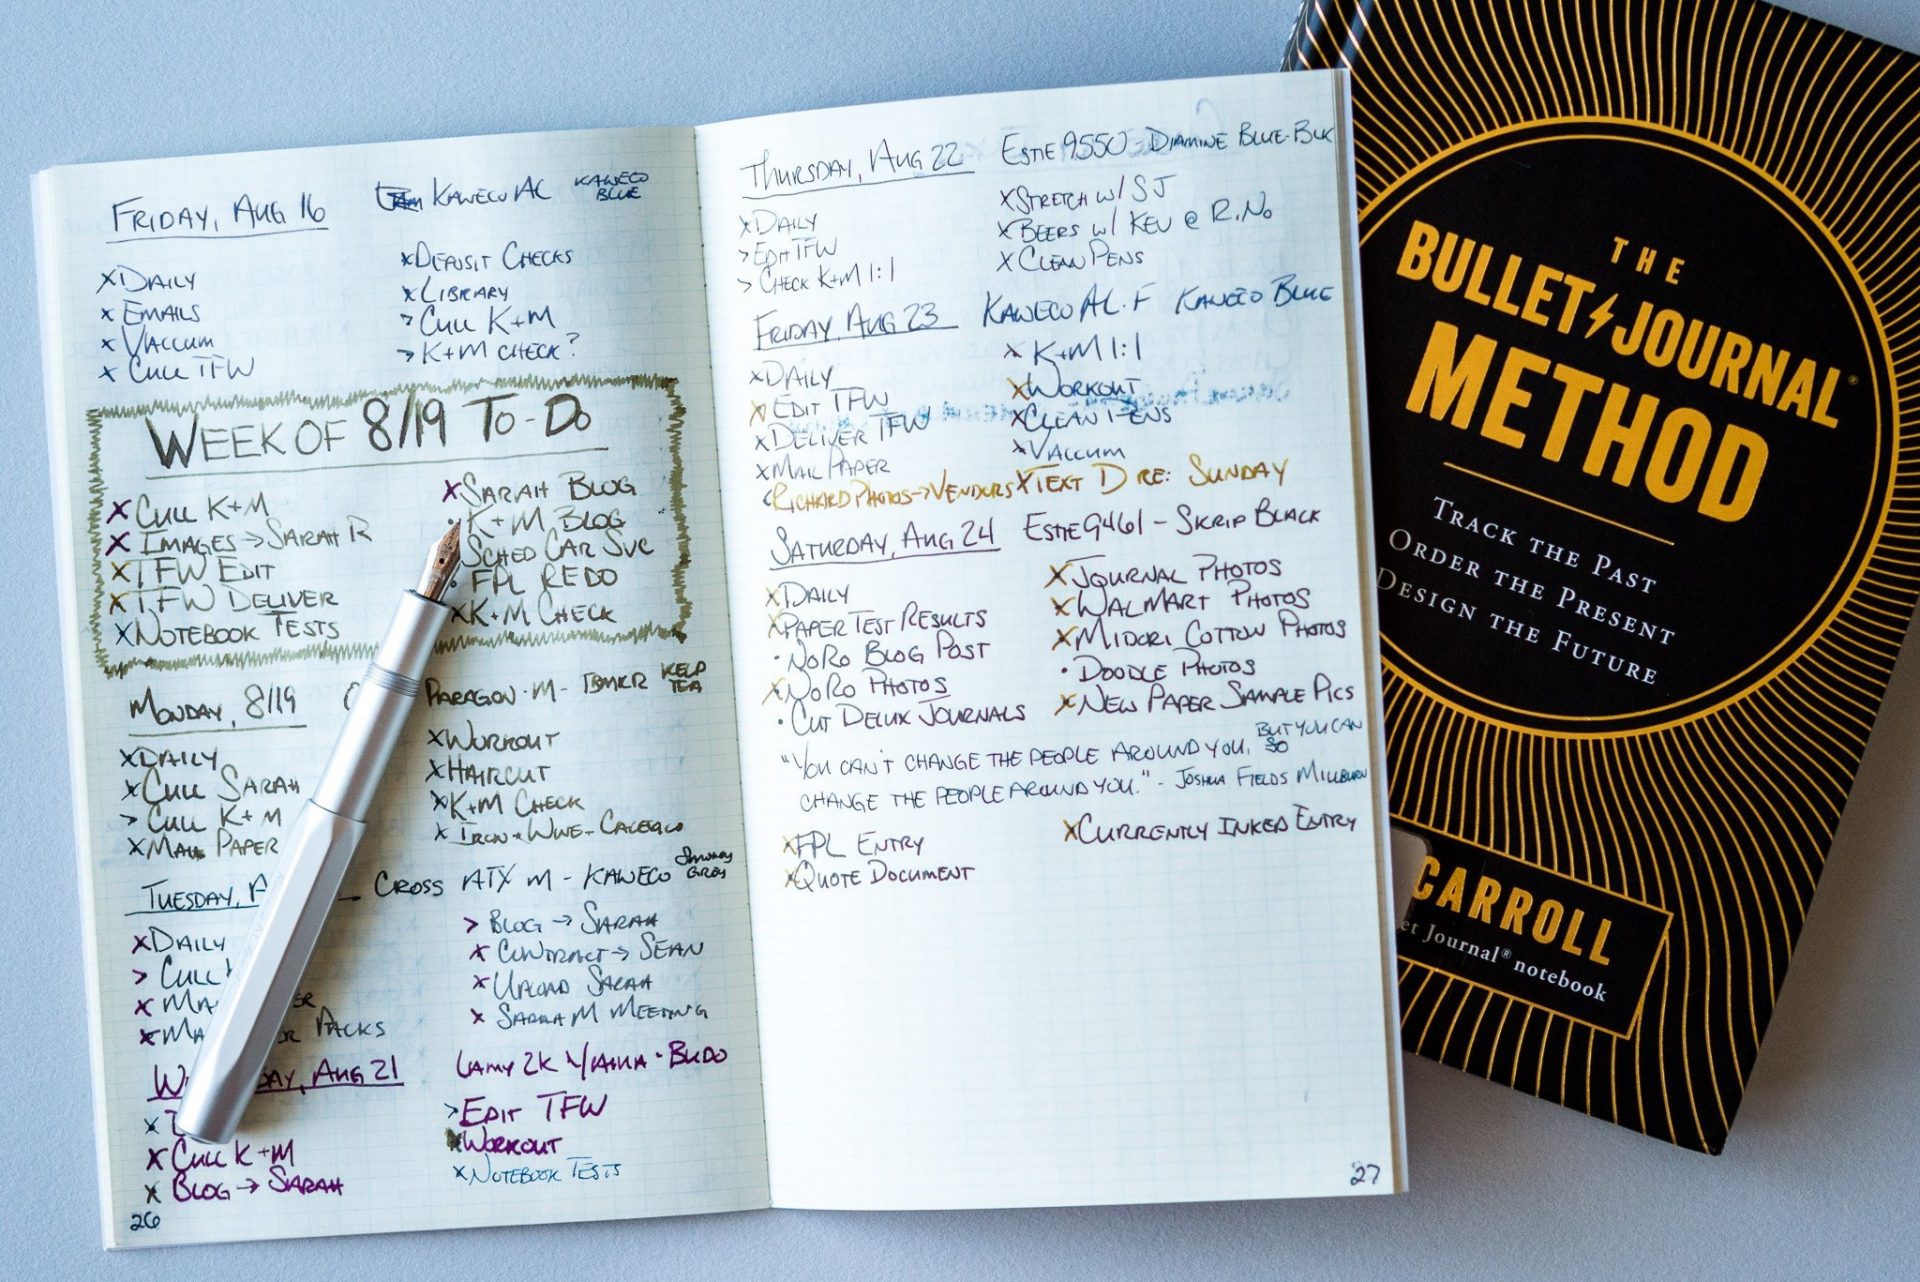 Luyện tập ghi chép Bullet Journal bằng tiếng Anh để cải thiện khả năng Writing mỗi ngày